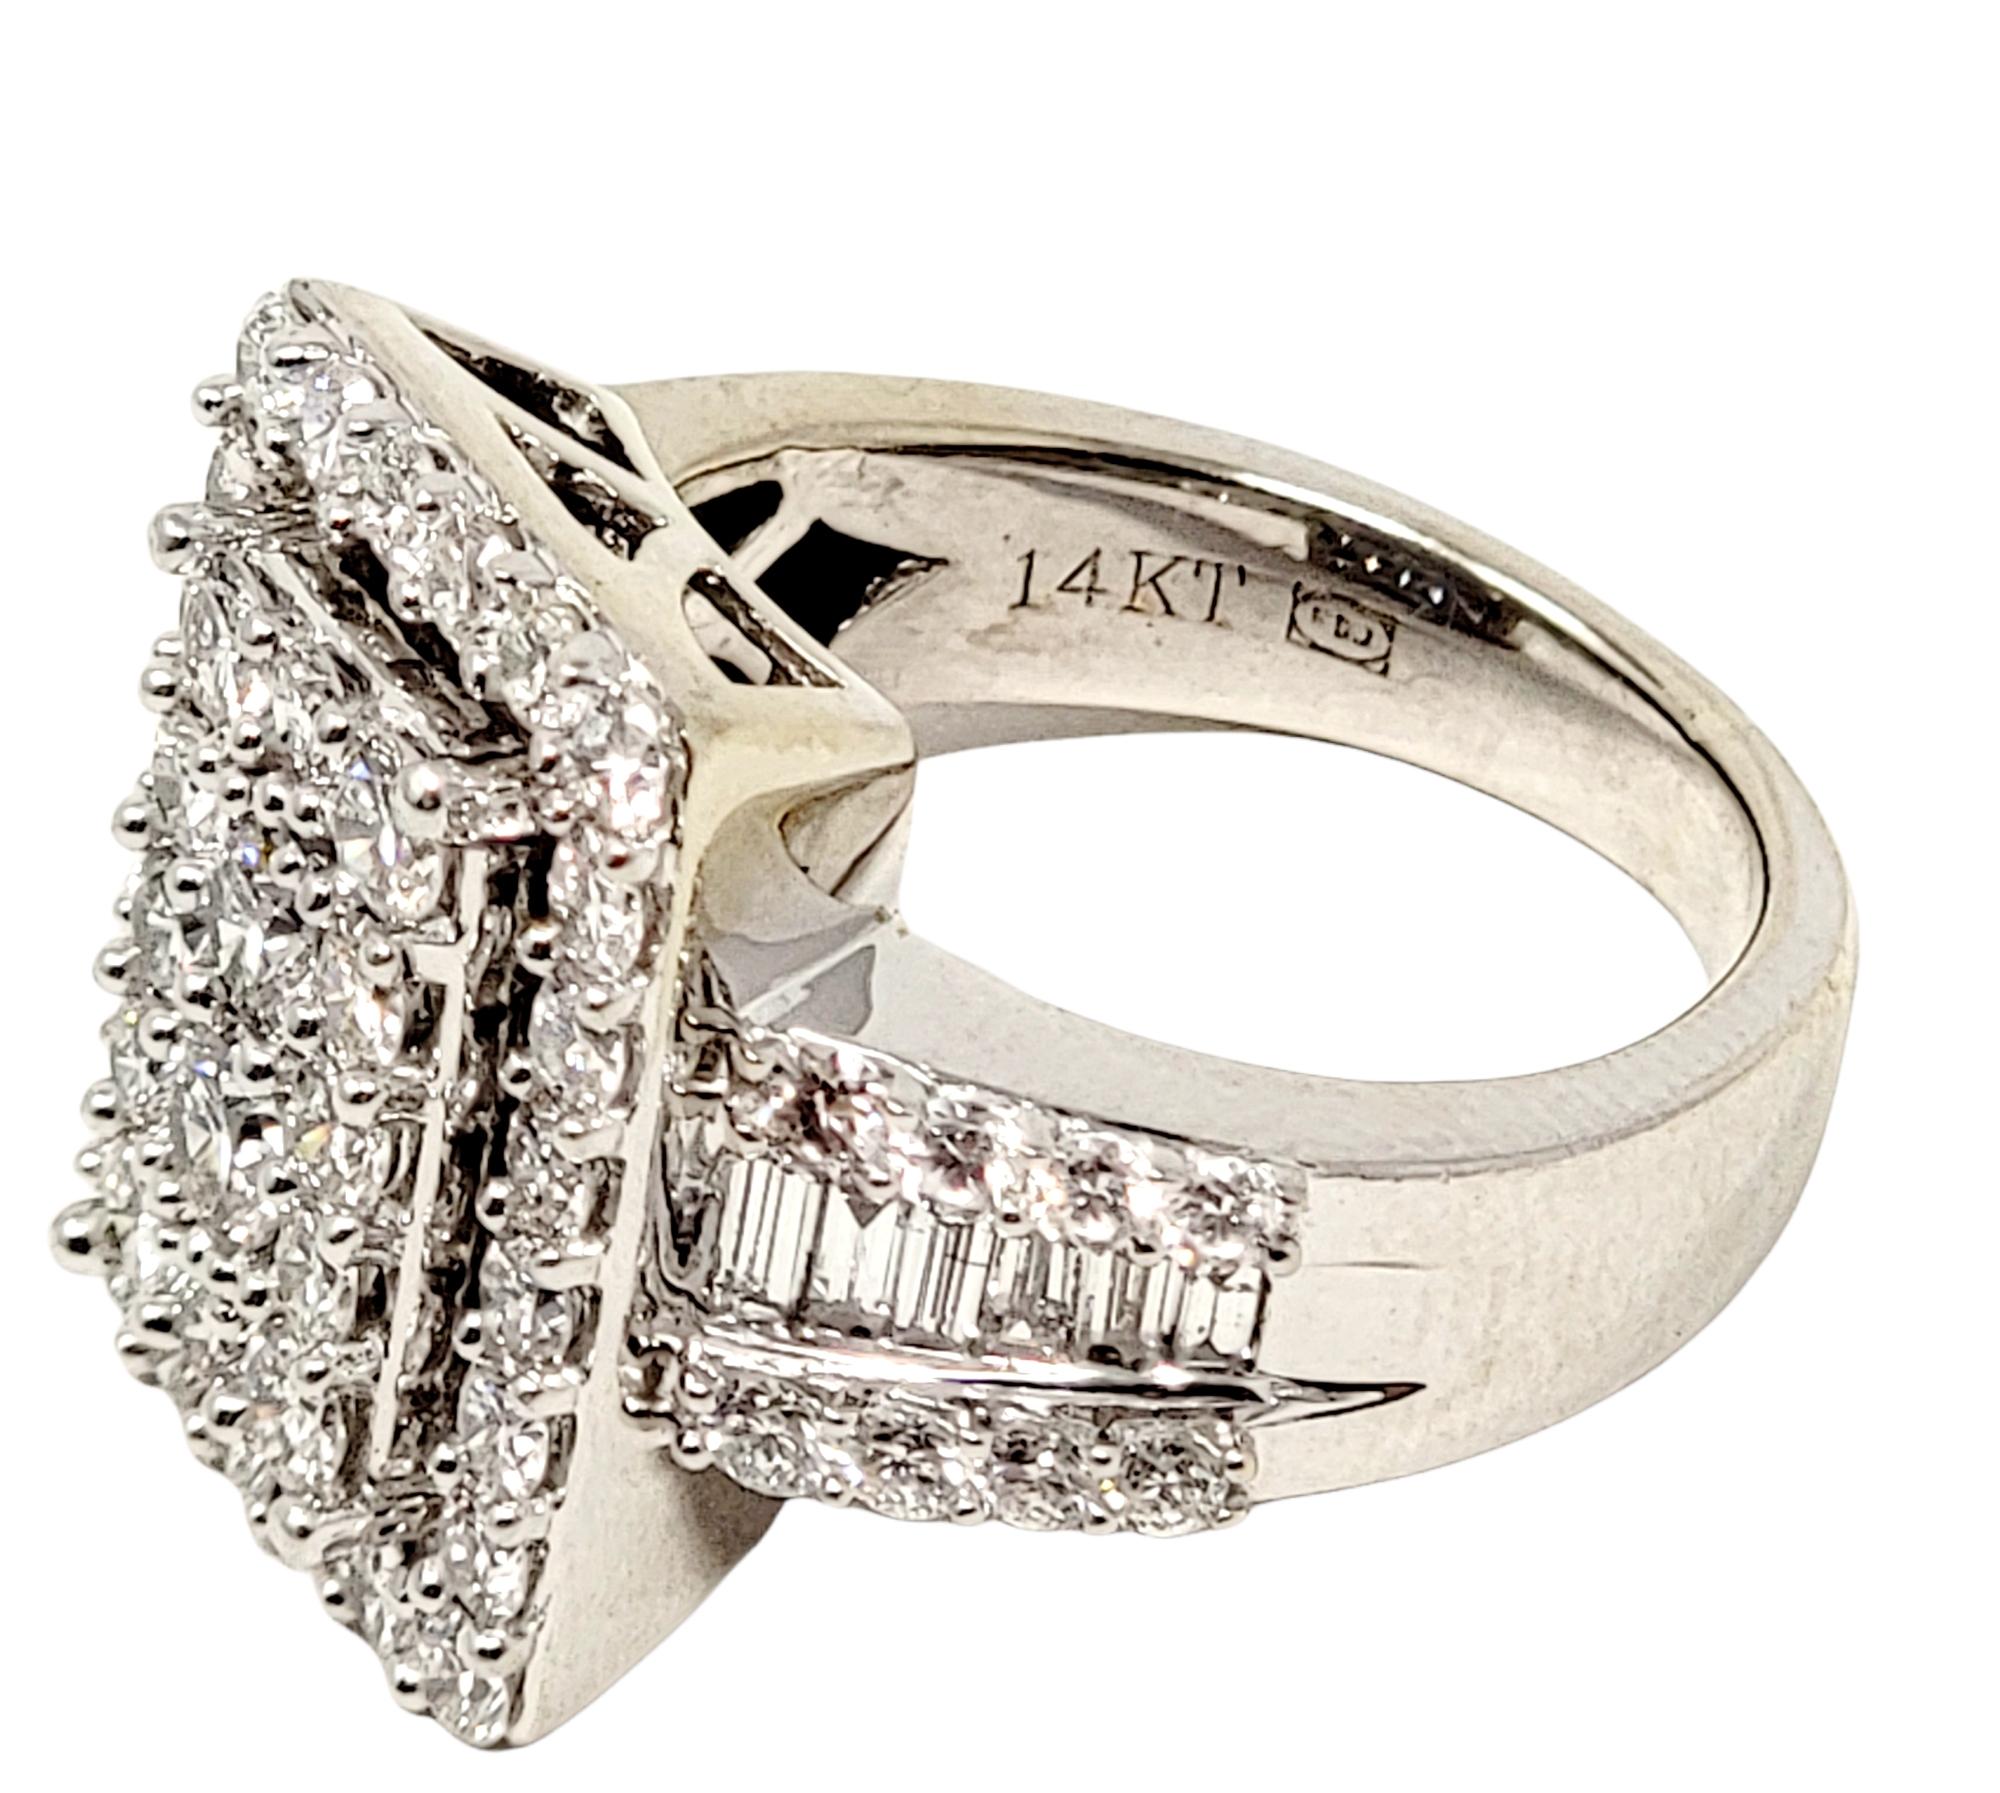 2.50 Carat Total Round Cut Diamond Rectangular Halo Ring in 14 Karat White Gold For Sale 3